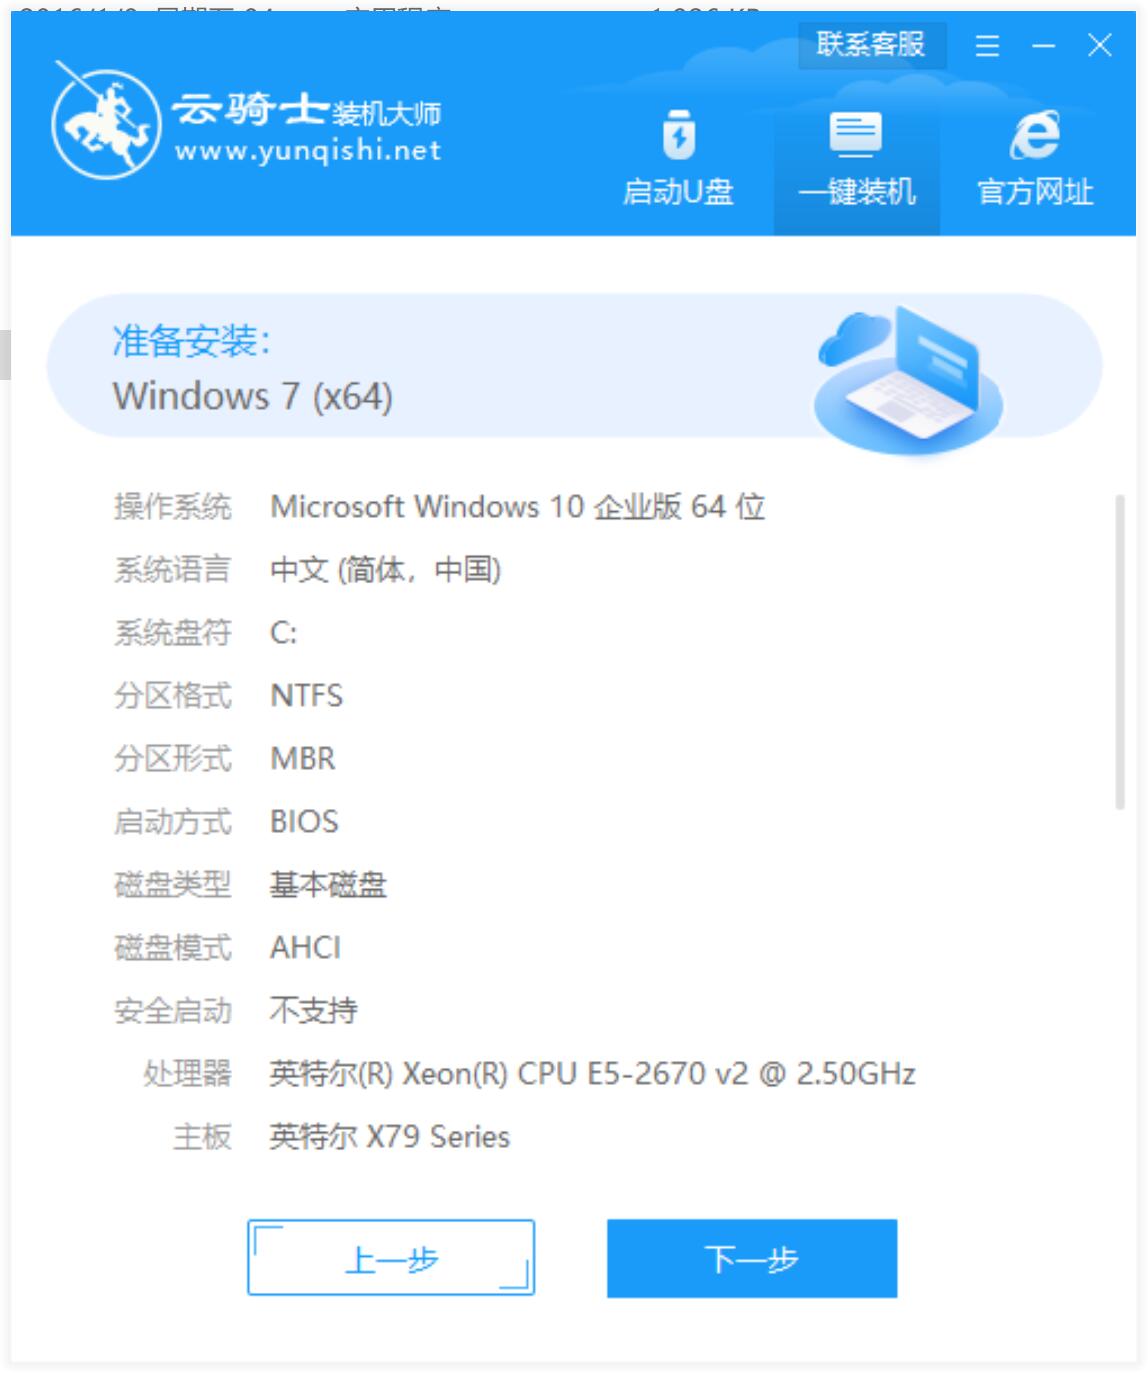 戴尔笔记本专用系统 GHOST Window7 x64位 SP1 稳定安装版 V2021.09(6)